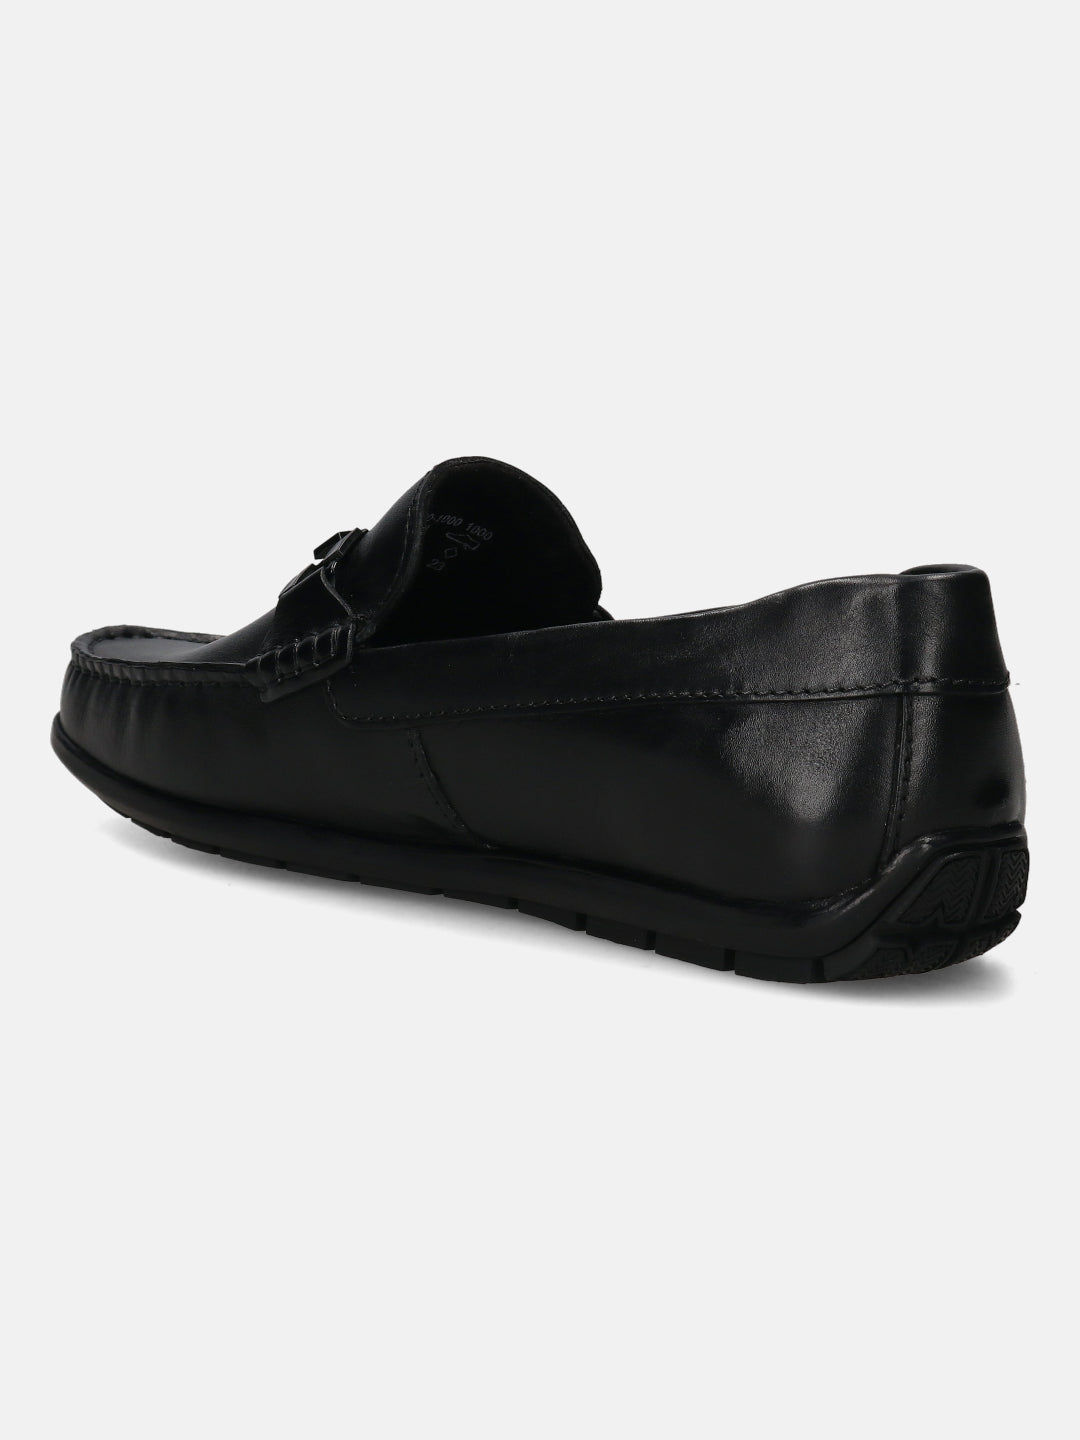 Xline Black Driver Shoes